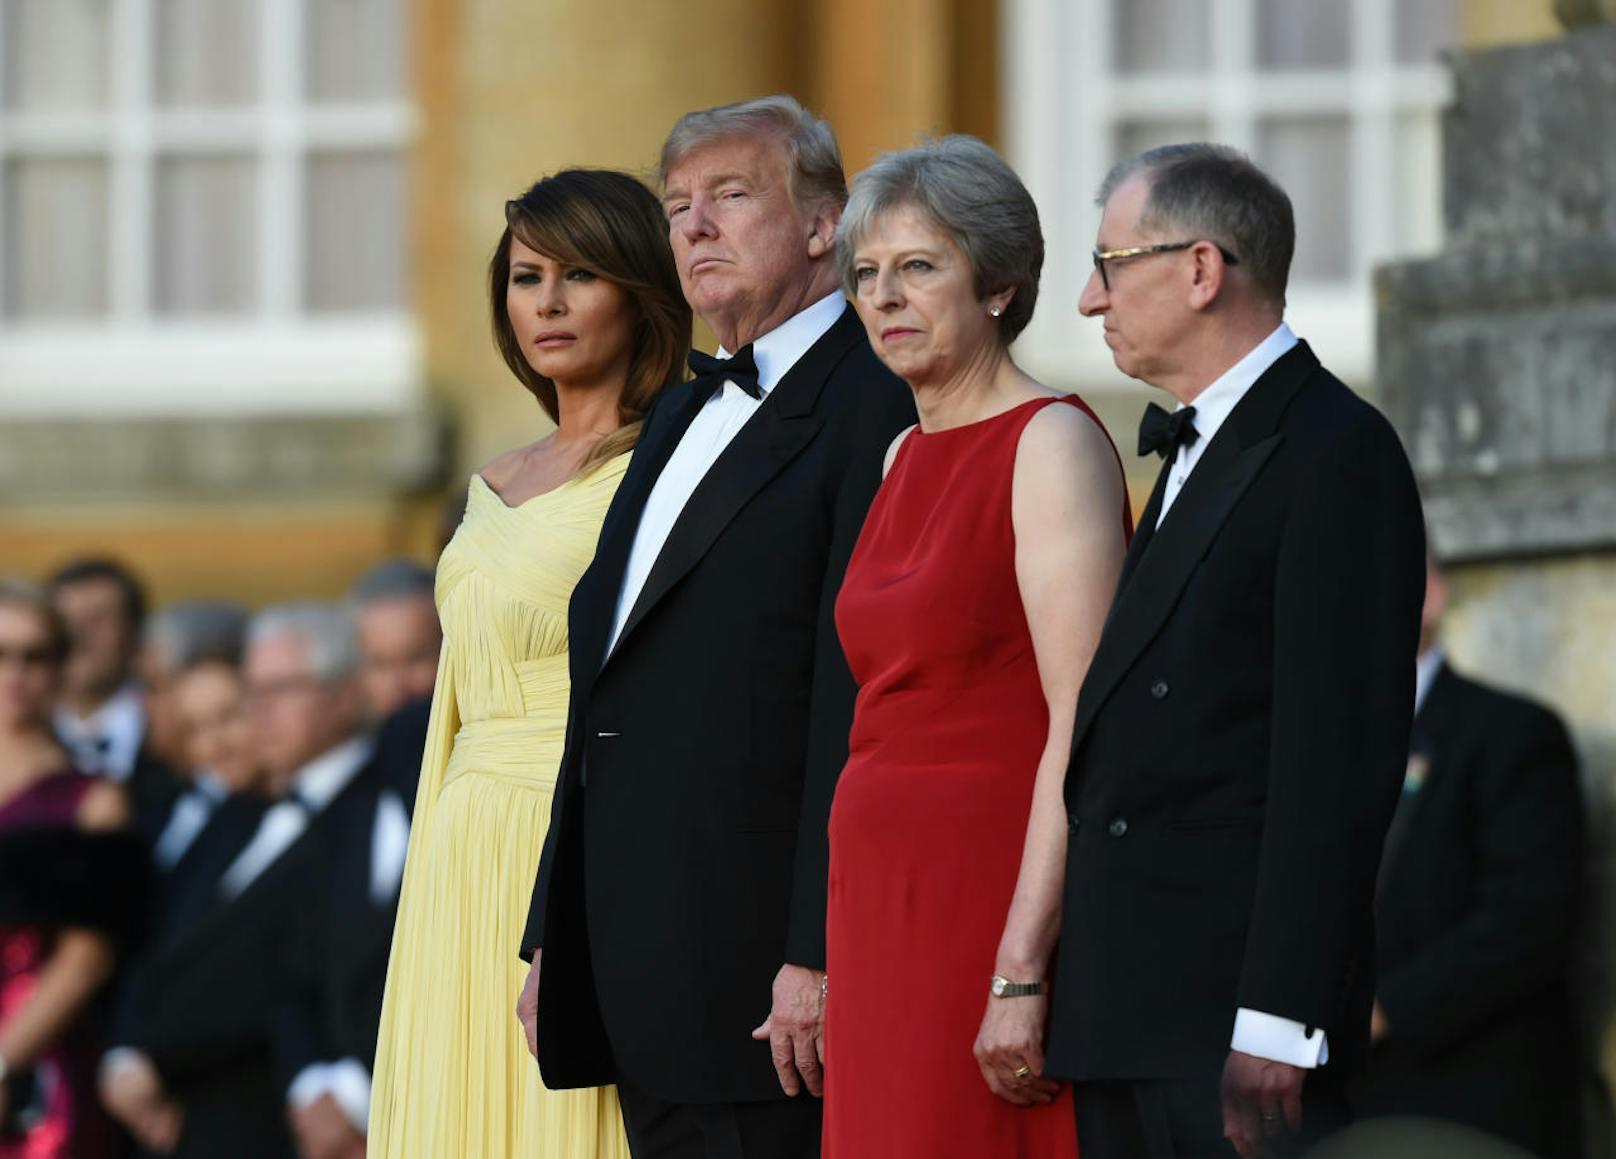 v.l.n.r.: First <b>Lady Melania</b> und US-Präsident <b>Donald Trump</b> wurden von Premierministerin <b>Theresa May</b> und ihrem Gatten <b>Philip May</b> auf den Stufen von Blenheim Palace, dem Geburtsort von Winston Churchill zum Staatsdinner empfangen (12. Juli 2018).